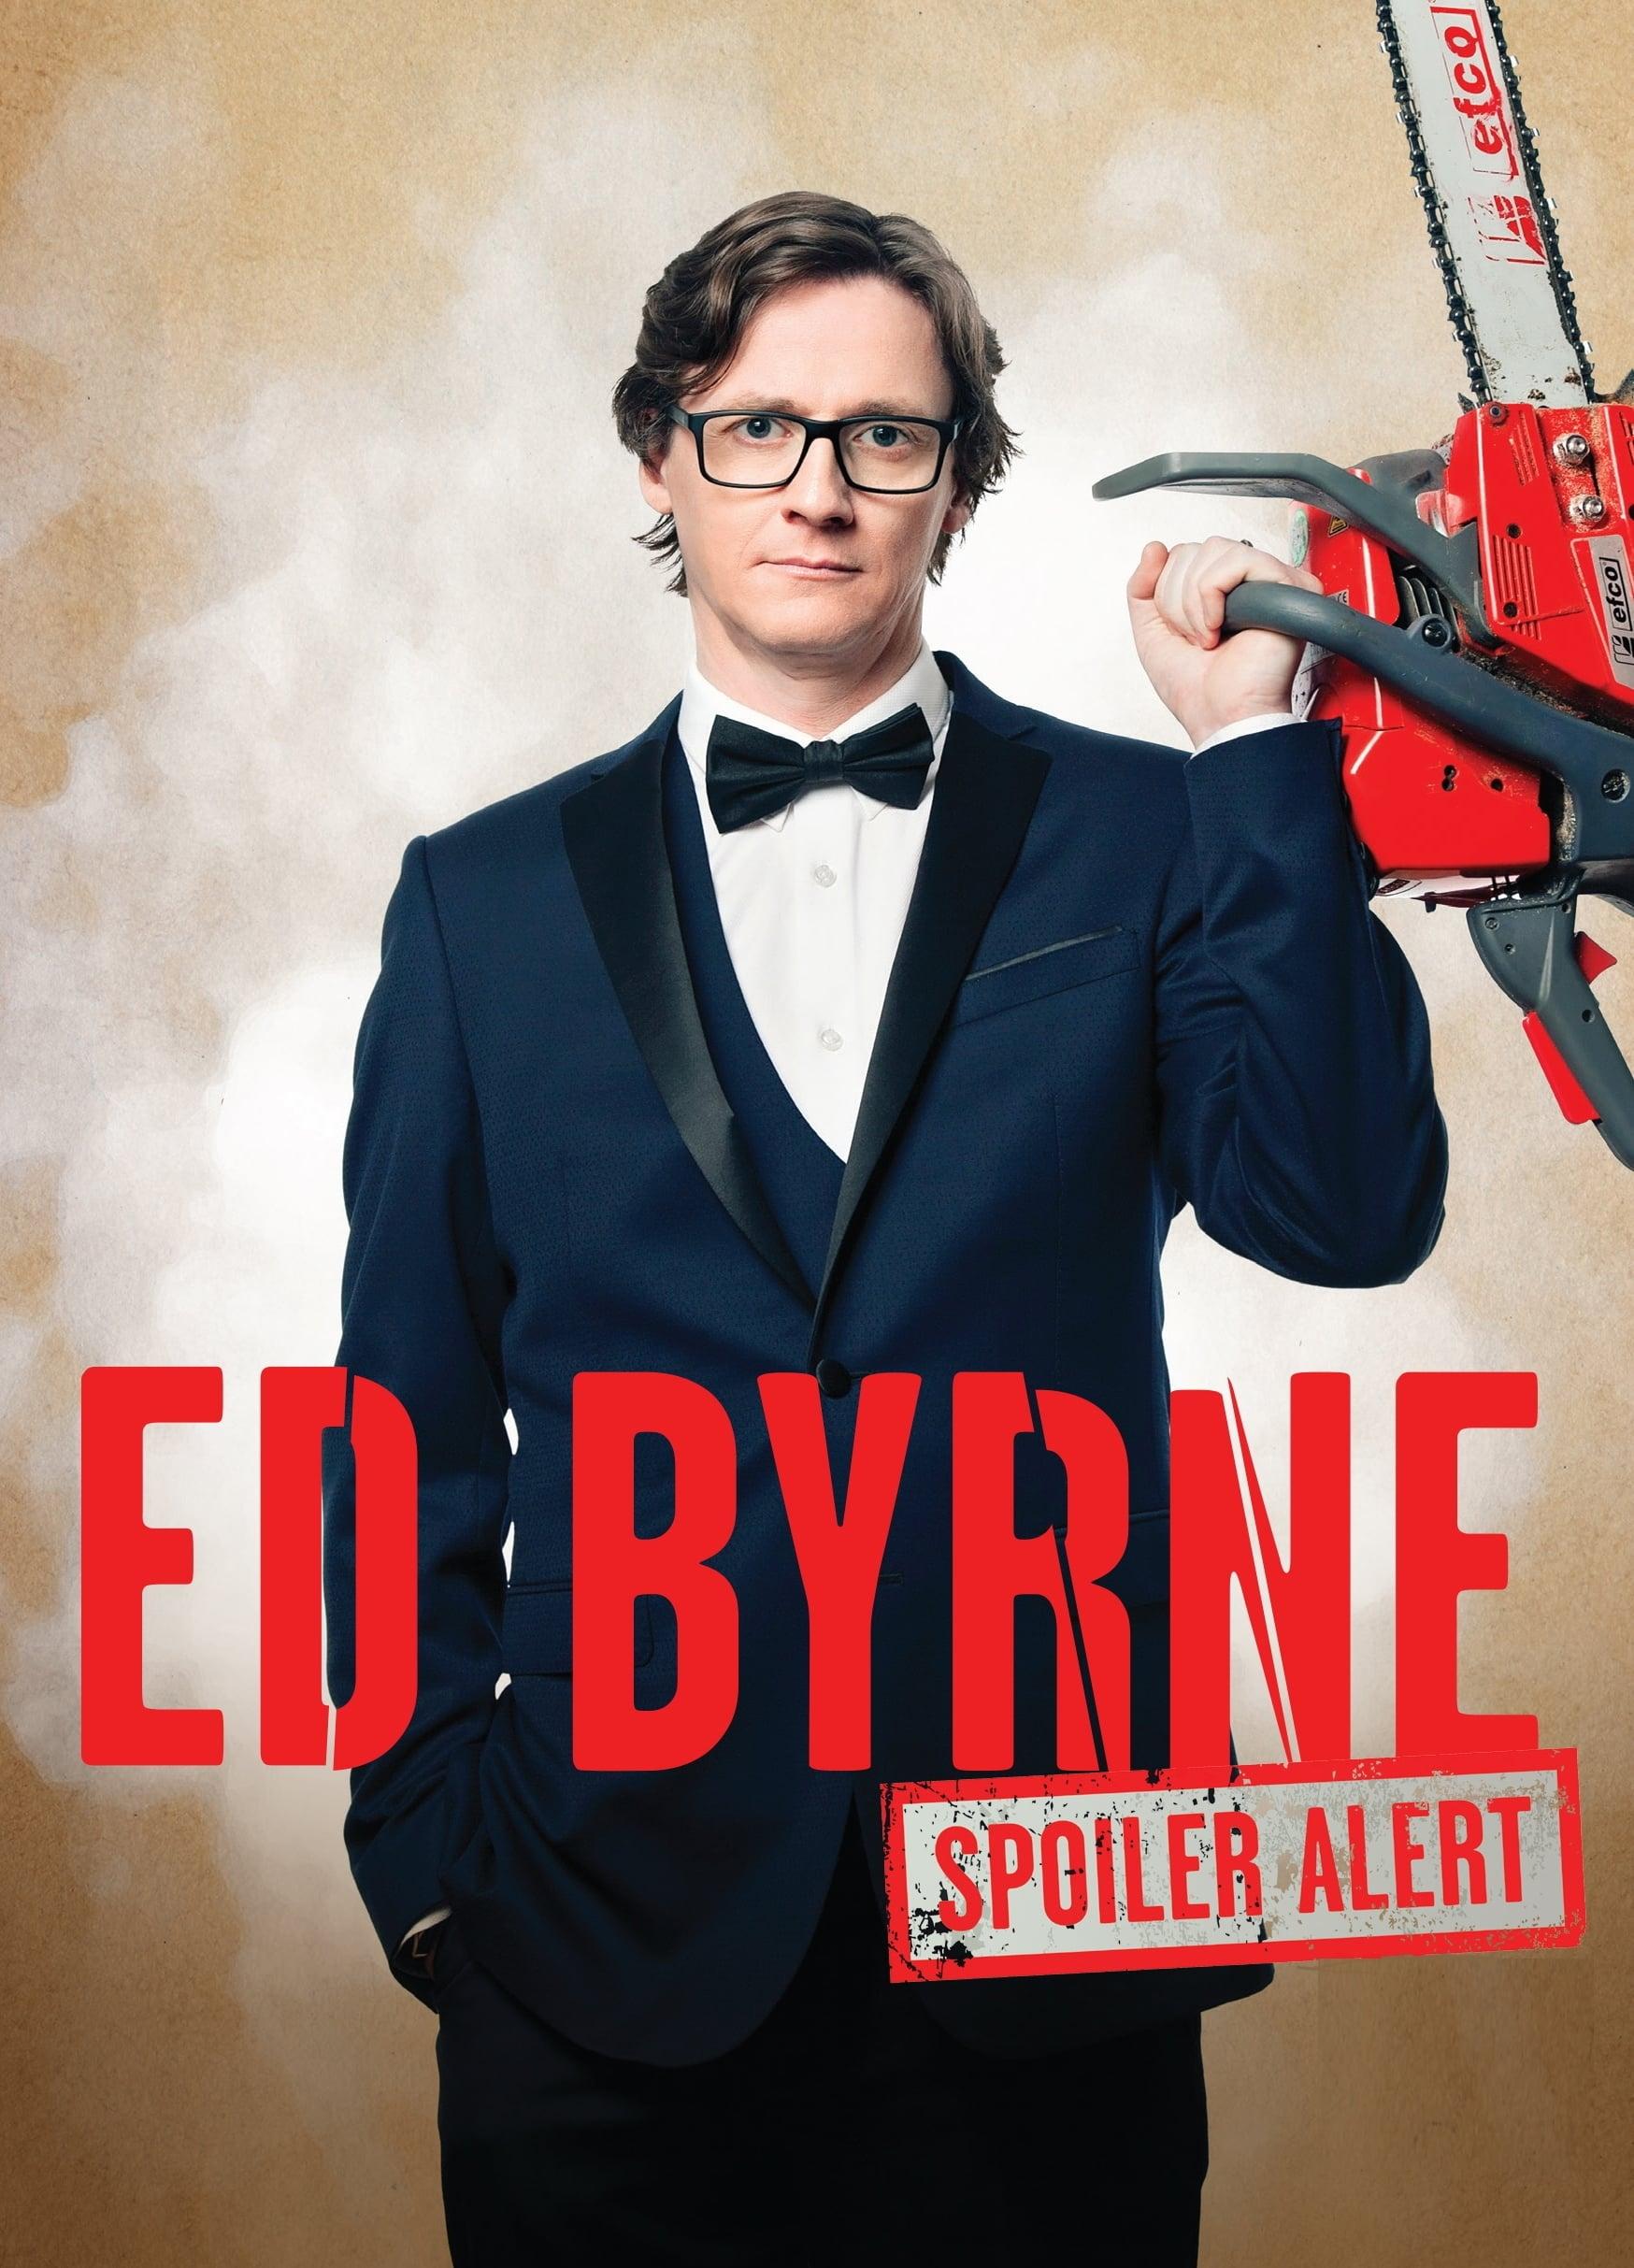 Ed Byrne: Spoiler Alert poster